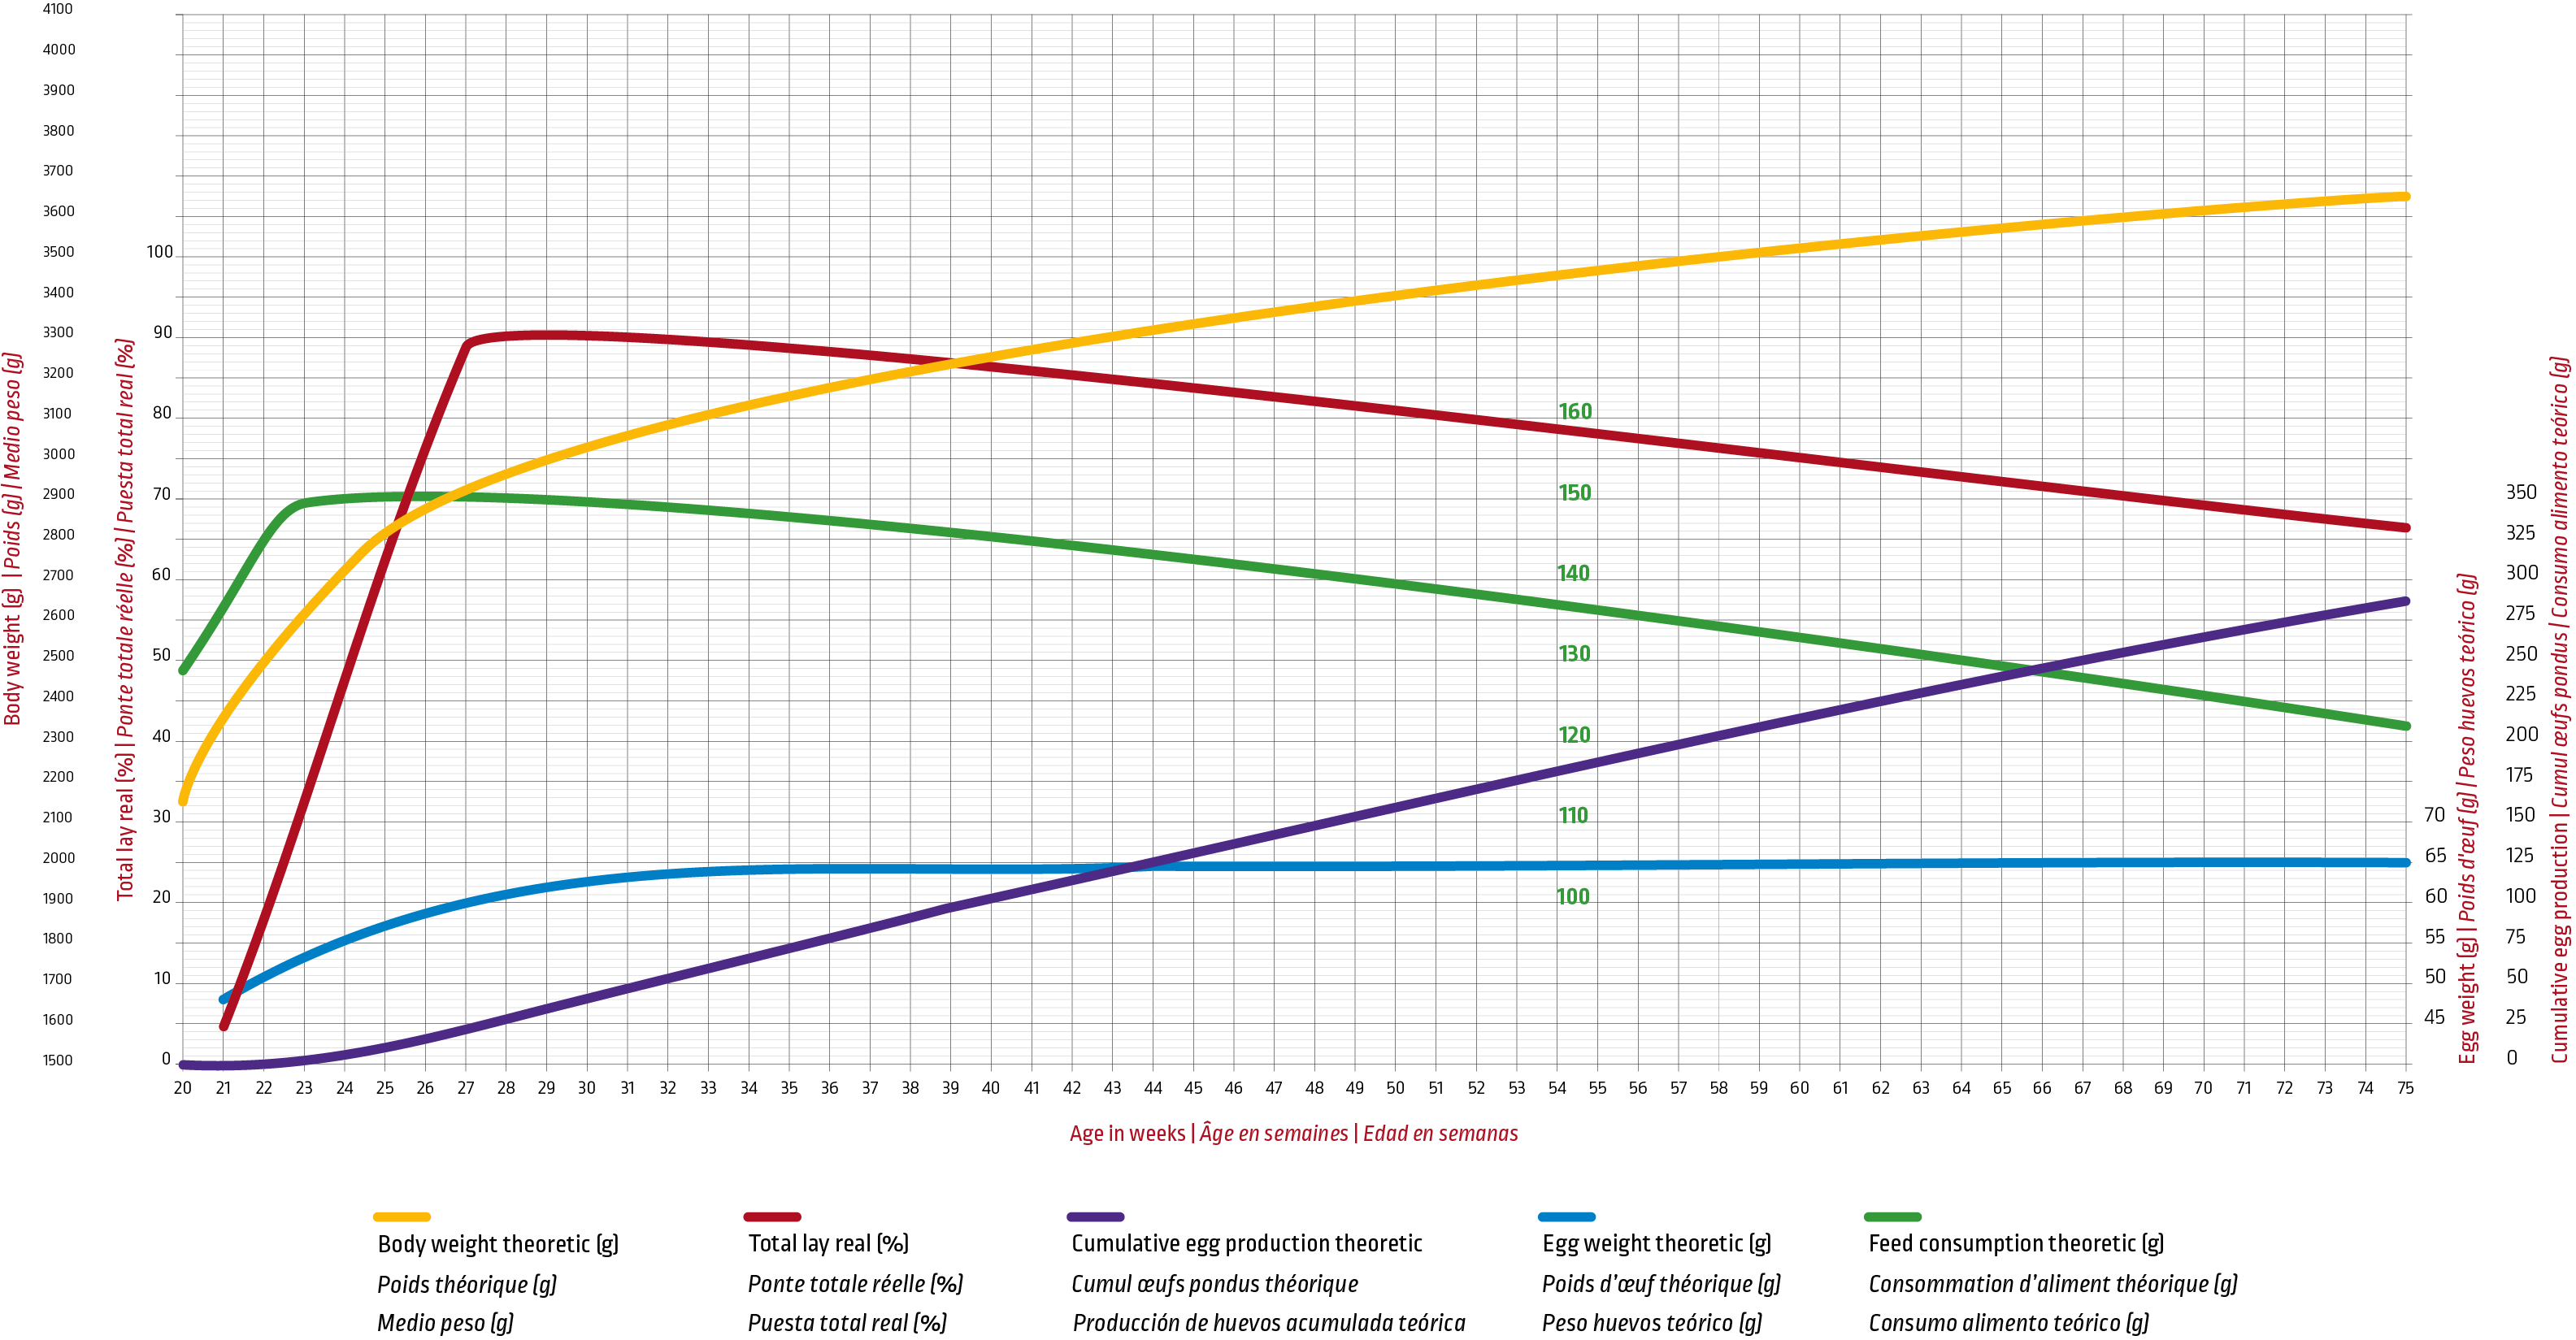 Irona_Europe_Laying chart.png